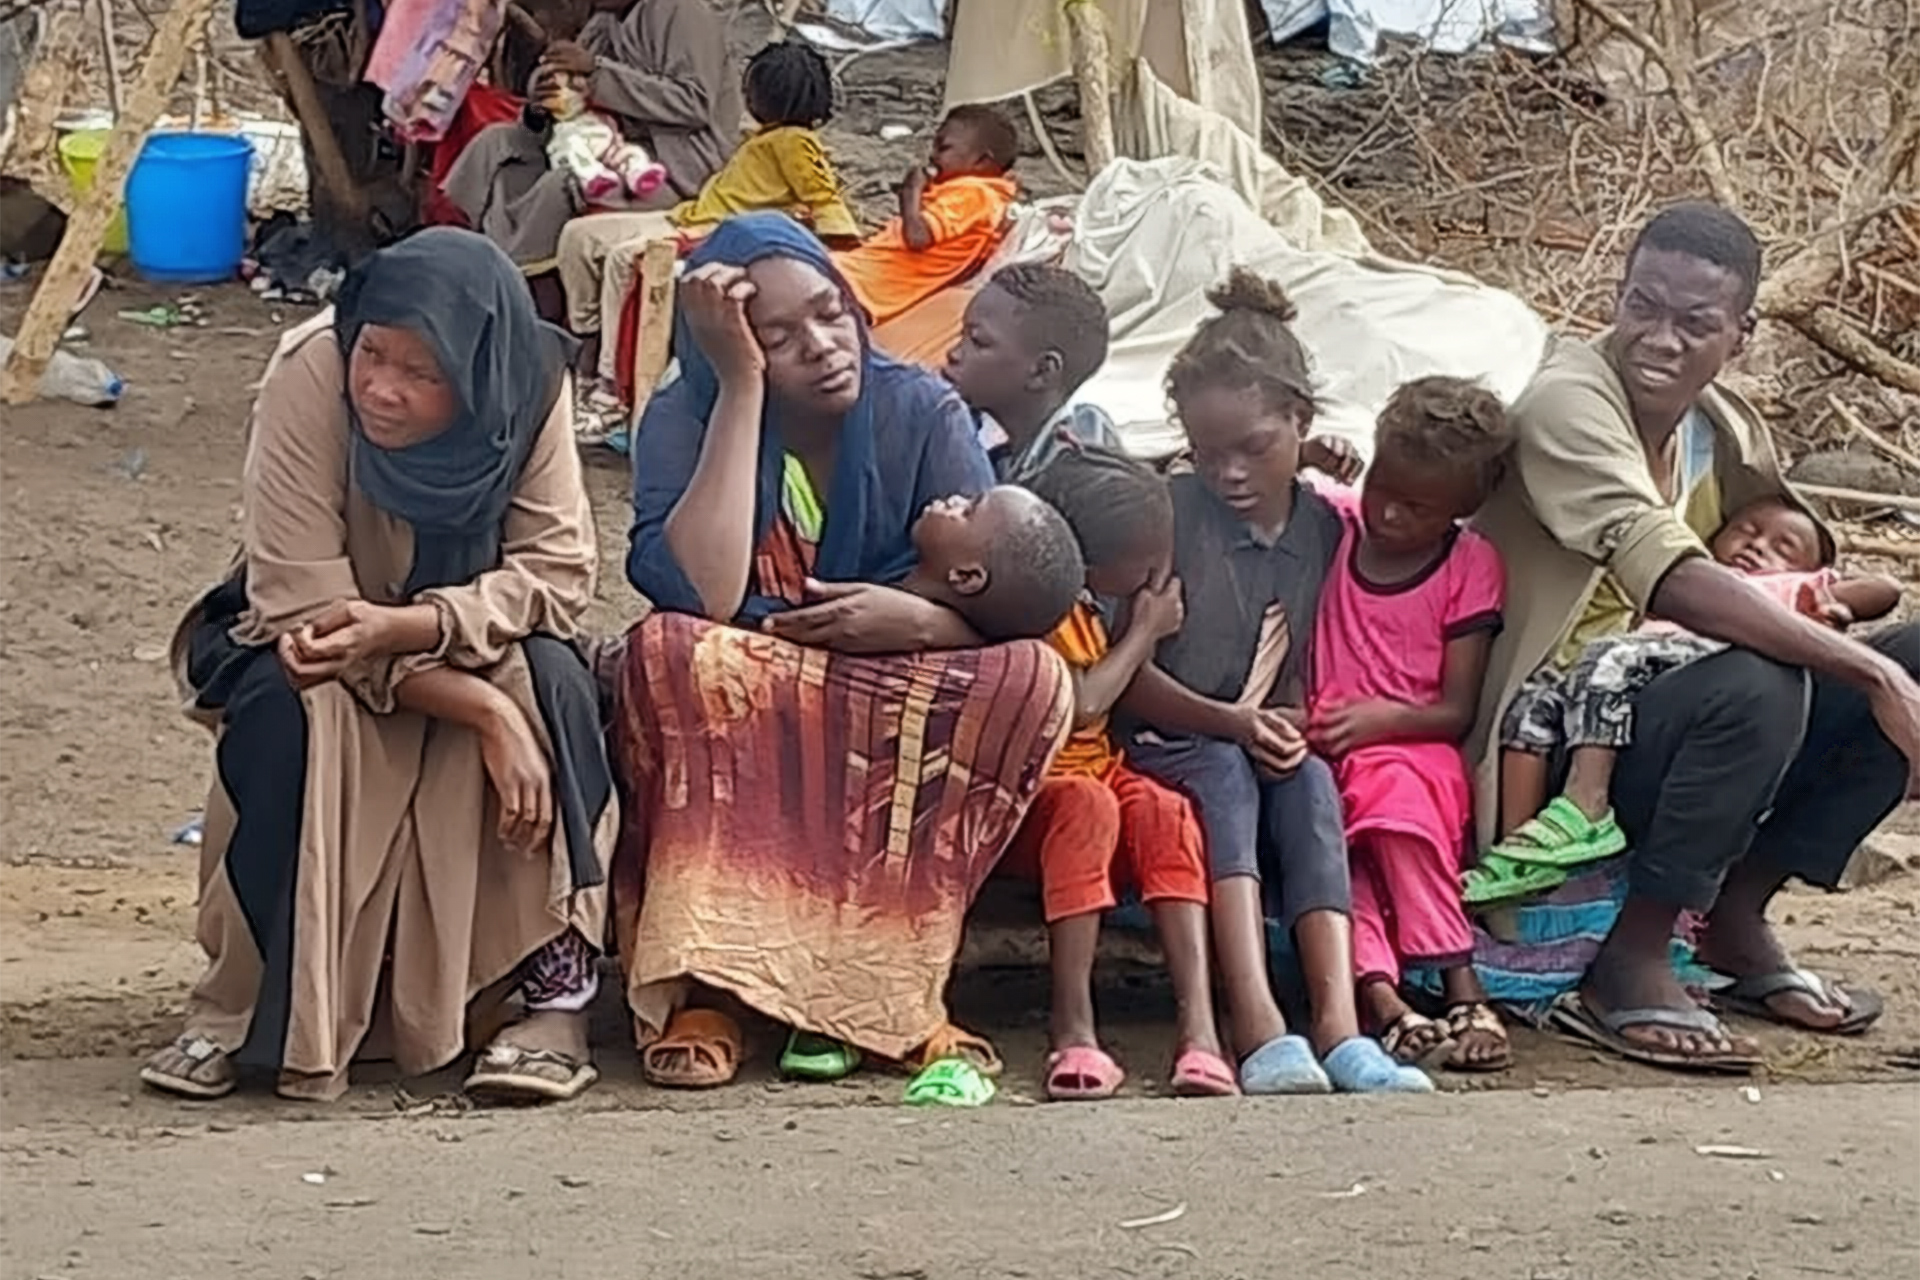 حملة تسلط الضوء على معاناة السودانيين العالقين بإثيوبيا | أخبار – البوكس نيوز